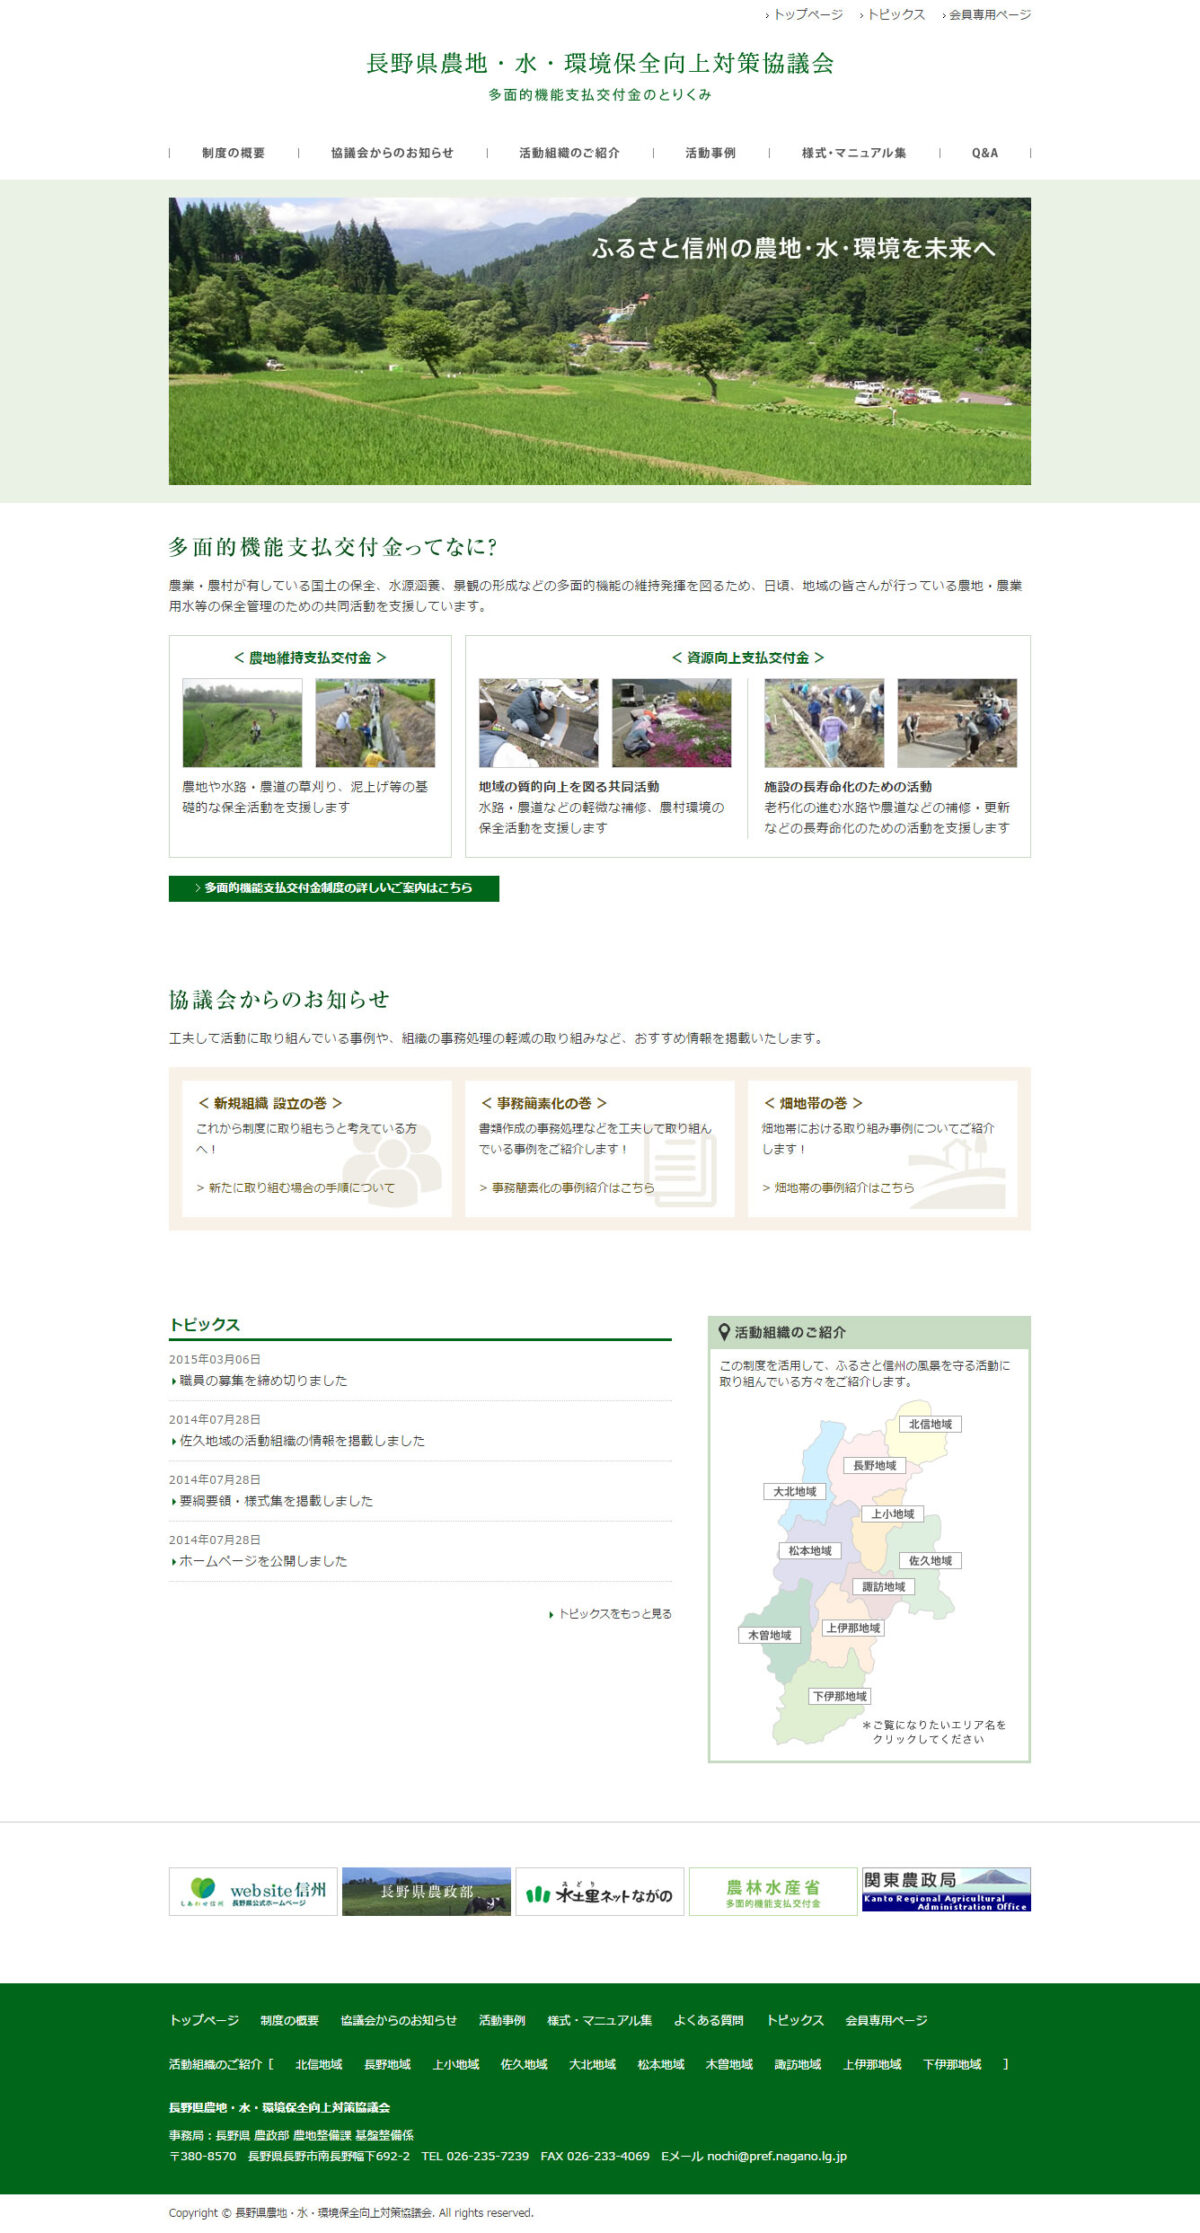 長野県農業農村多面的機能発揮促進協議会